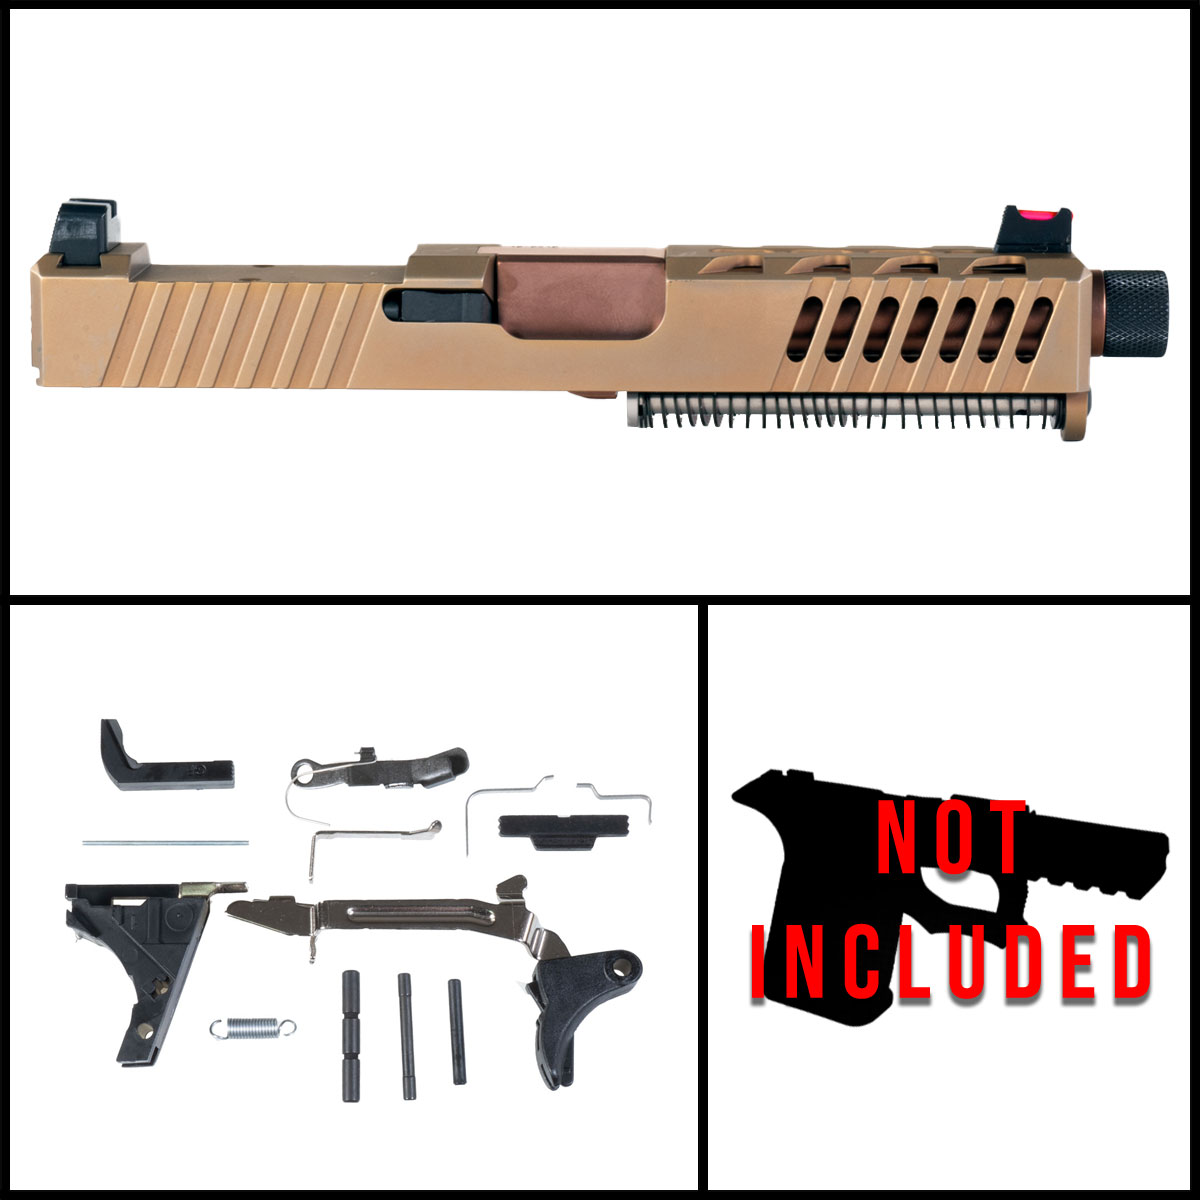 DTT 'Cyprium' 9mm Full Pistol Build Kit (Everything Minus Frame) - Glock 19 Compatible